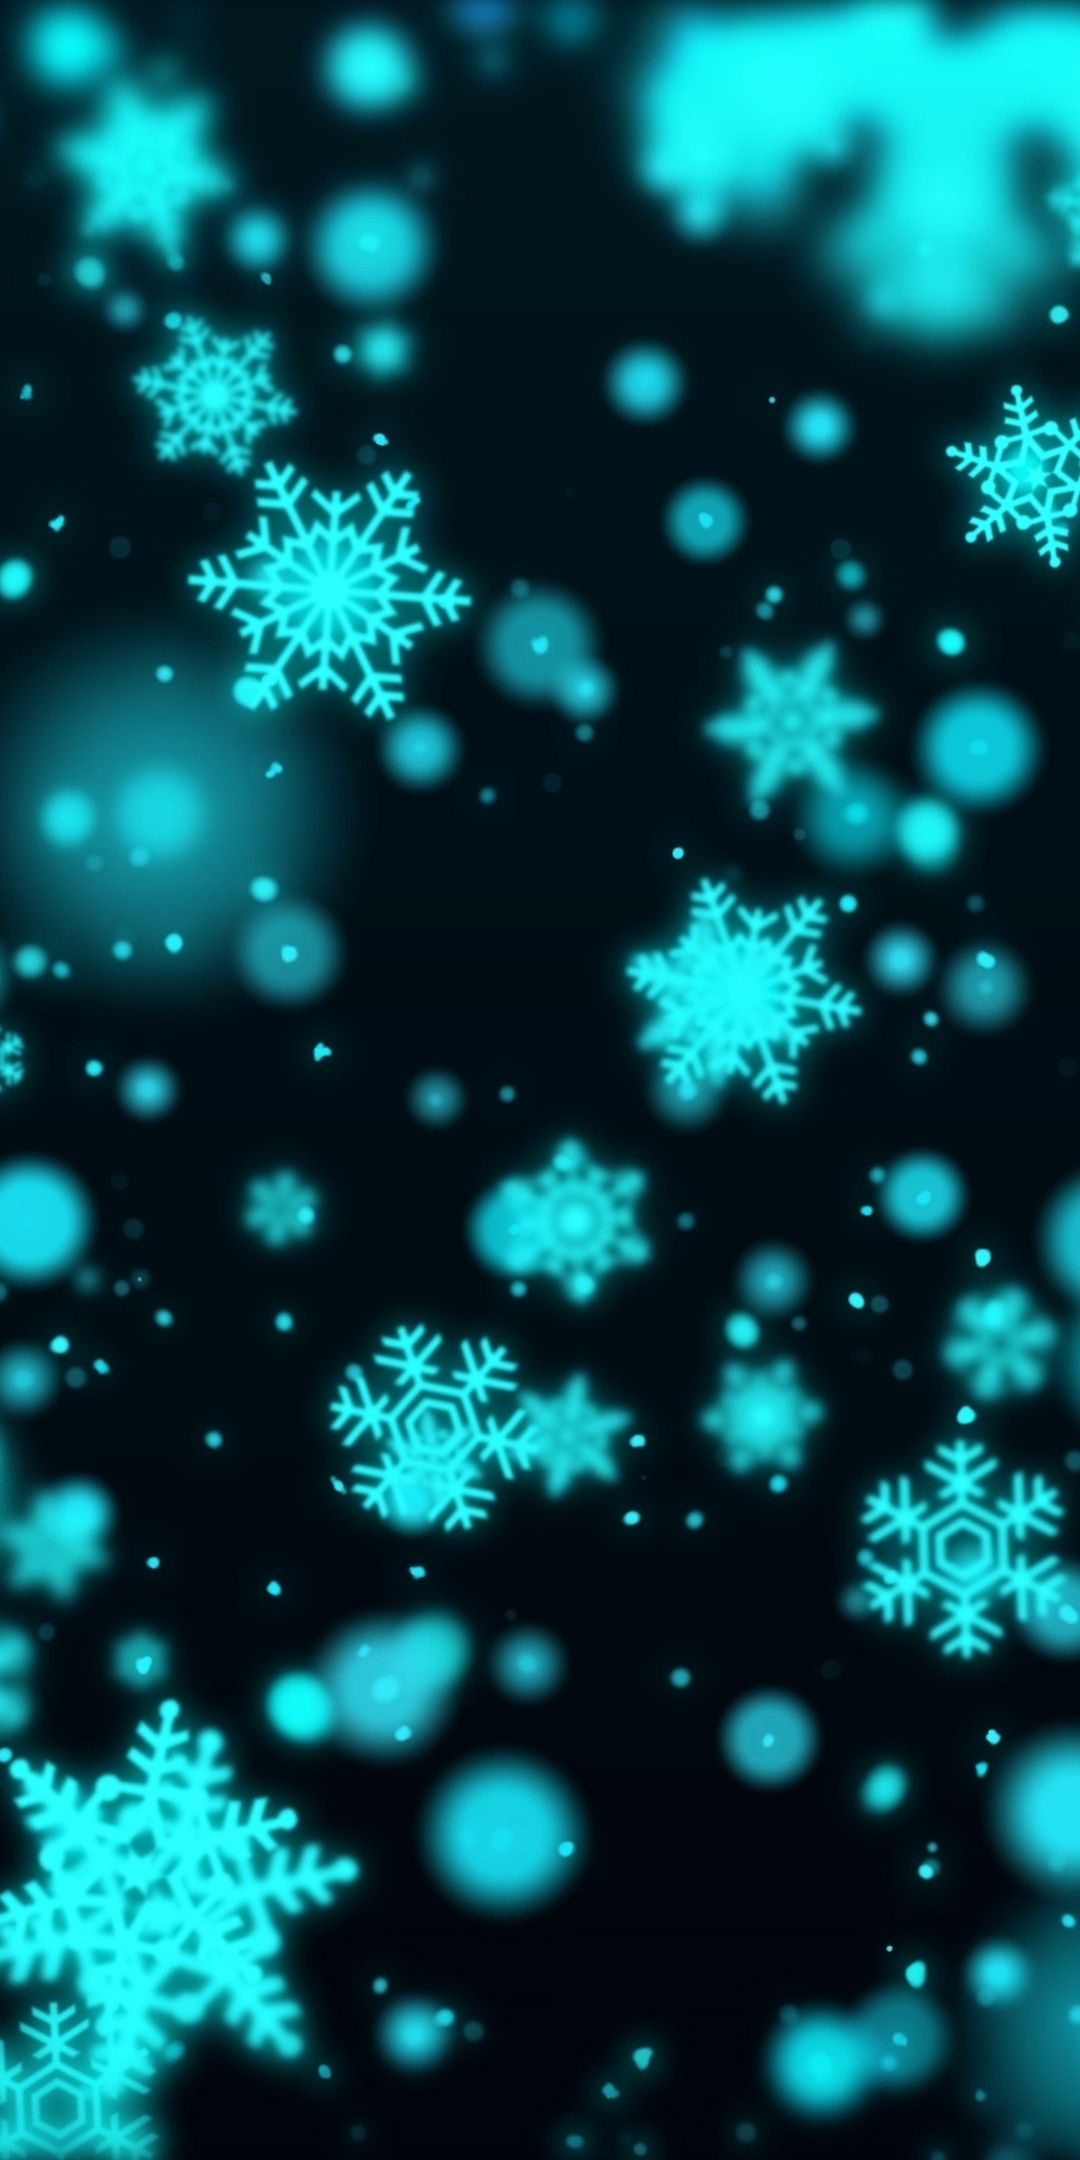 1080x2160 Blue snowflakes, bokeh, artwork, wallpaper | Snowflake wallpaper, Winter wallpaper, Winter snow wallpaper